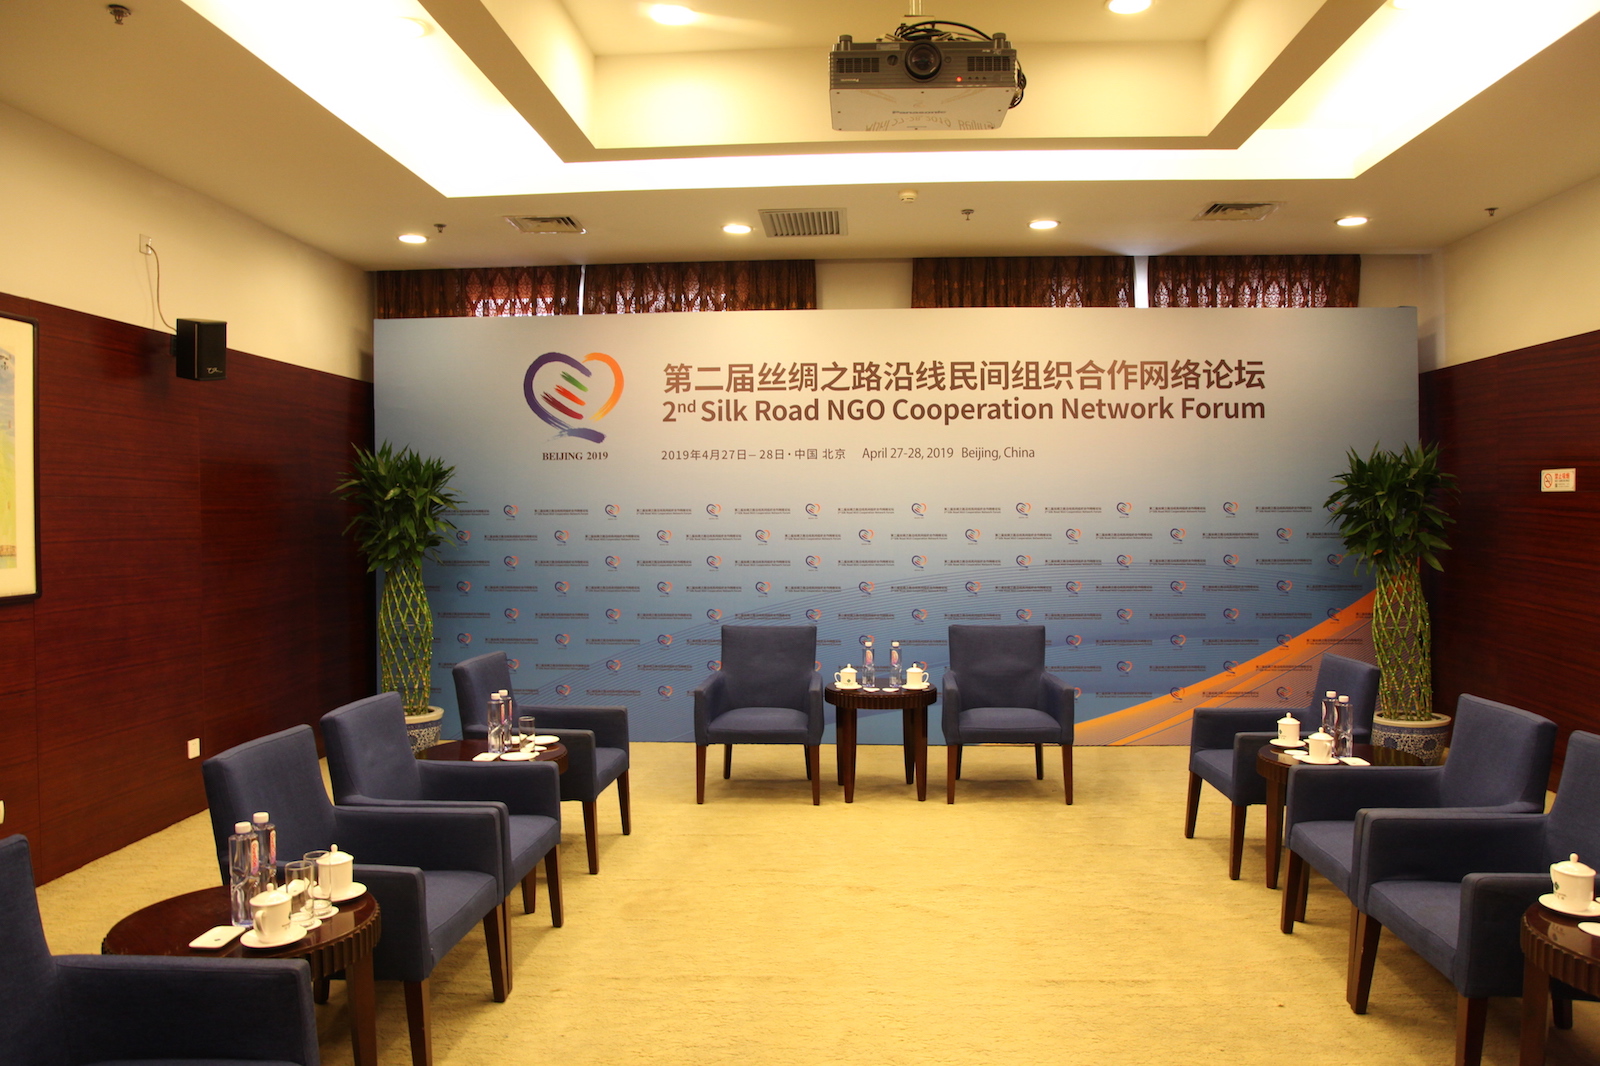 第二届丝绸之路沿线民间组织合作网络论坛